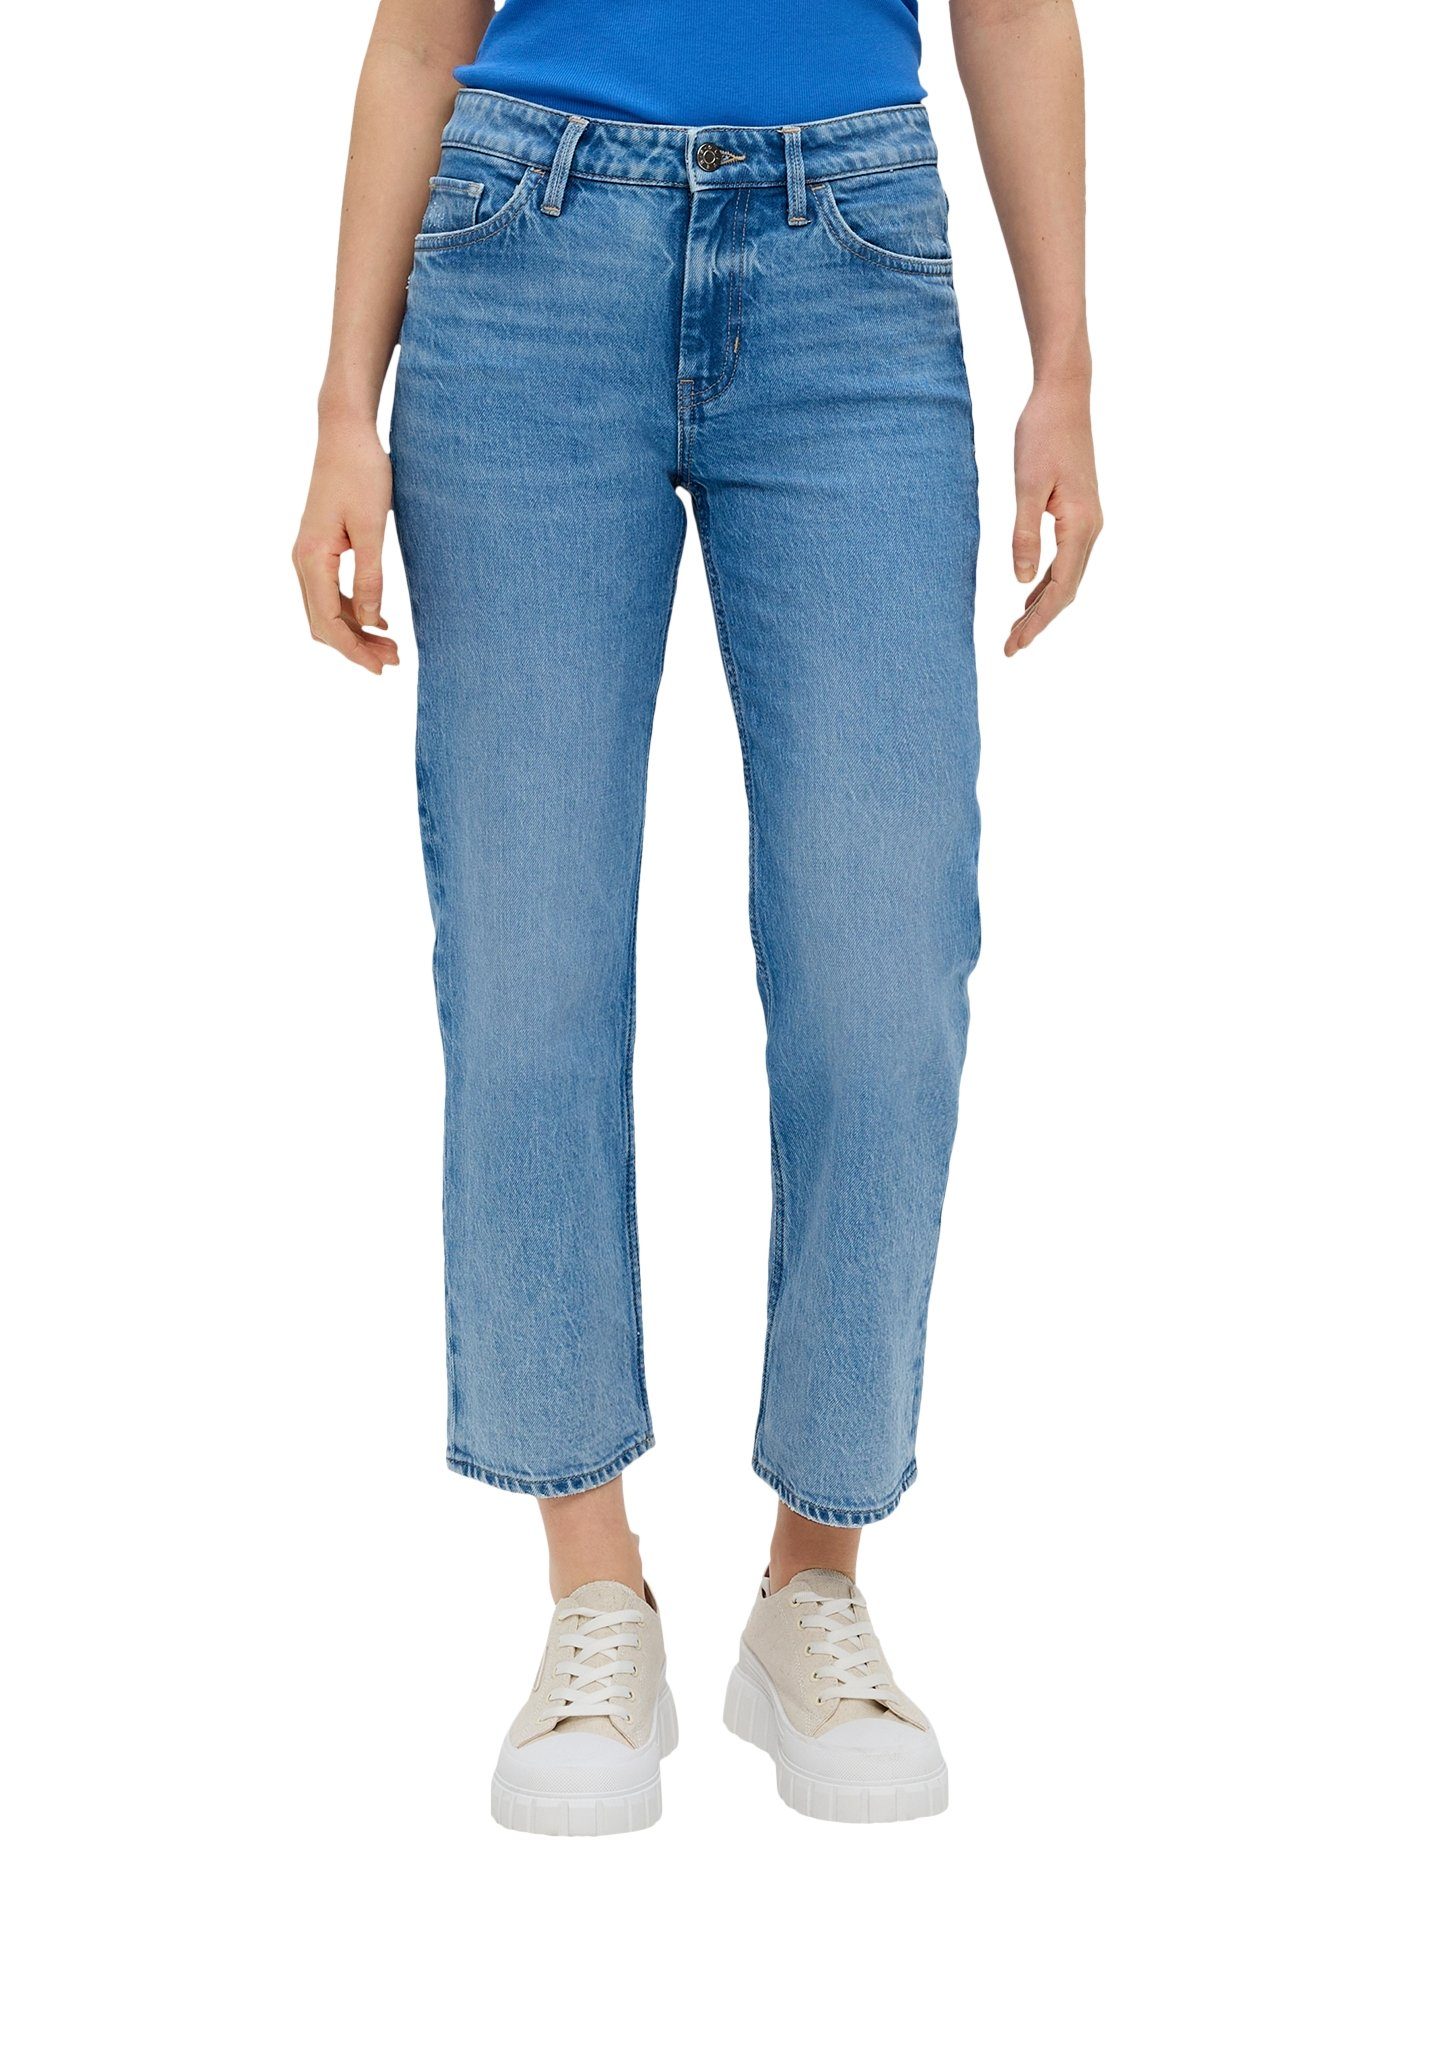 S.Oliver 5-pocket jeans Karolin